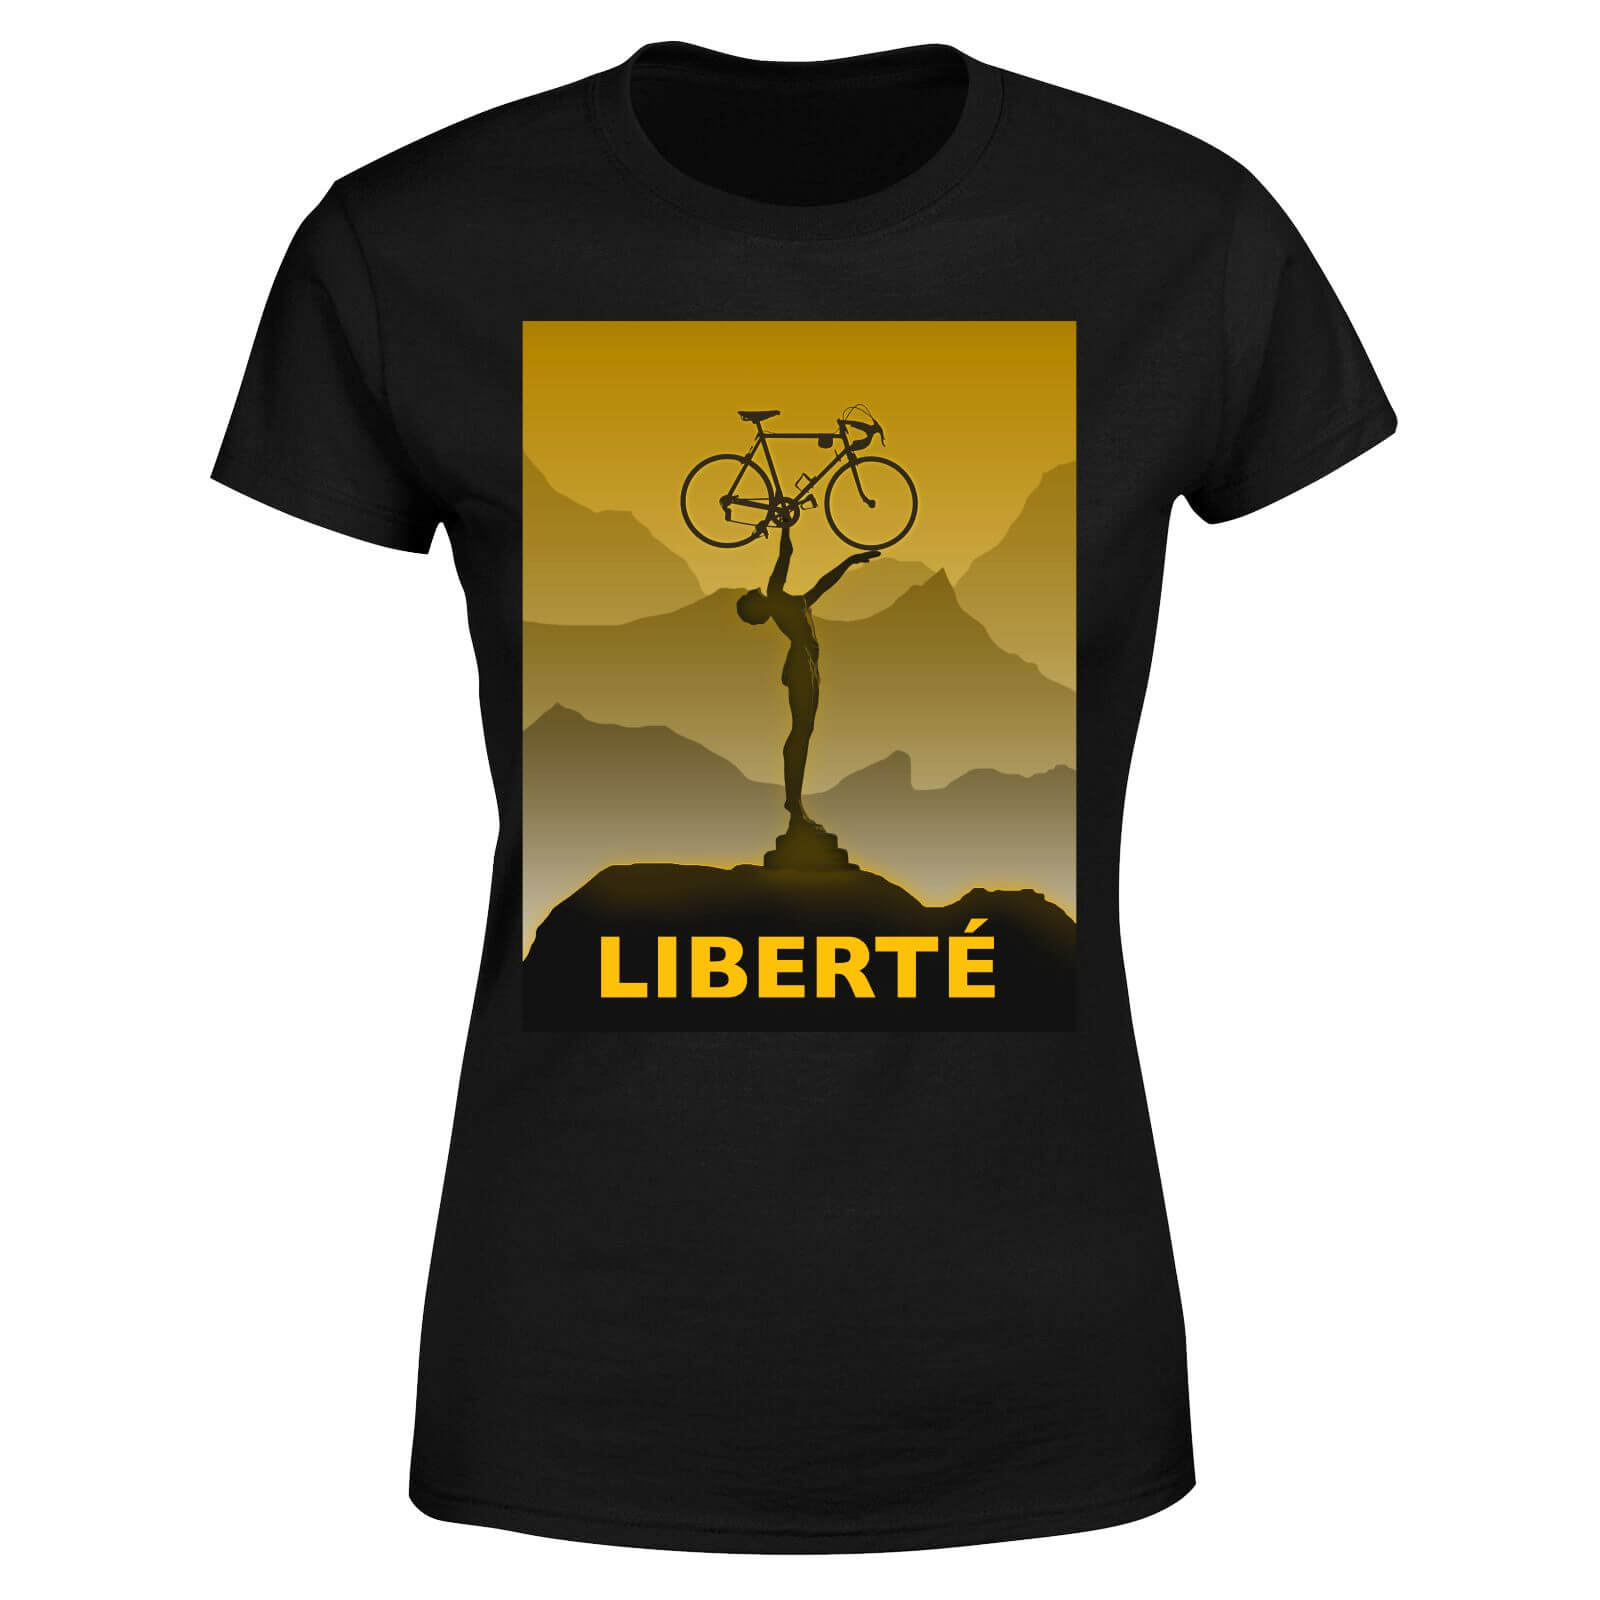 Liberte Women's T-Shirt - Black - S - Black